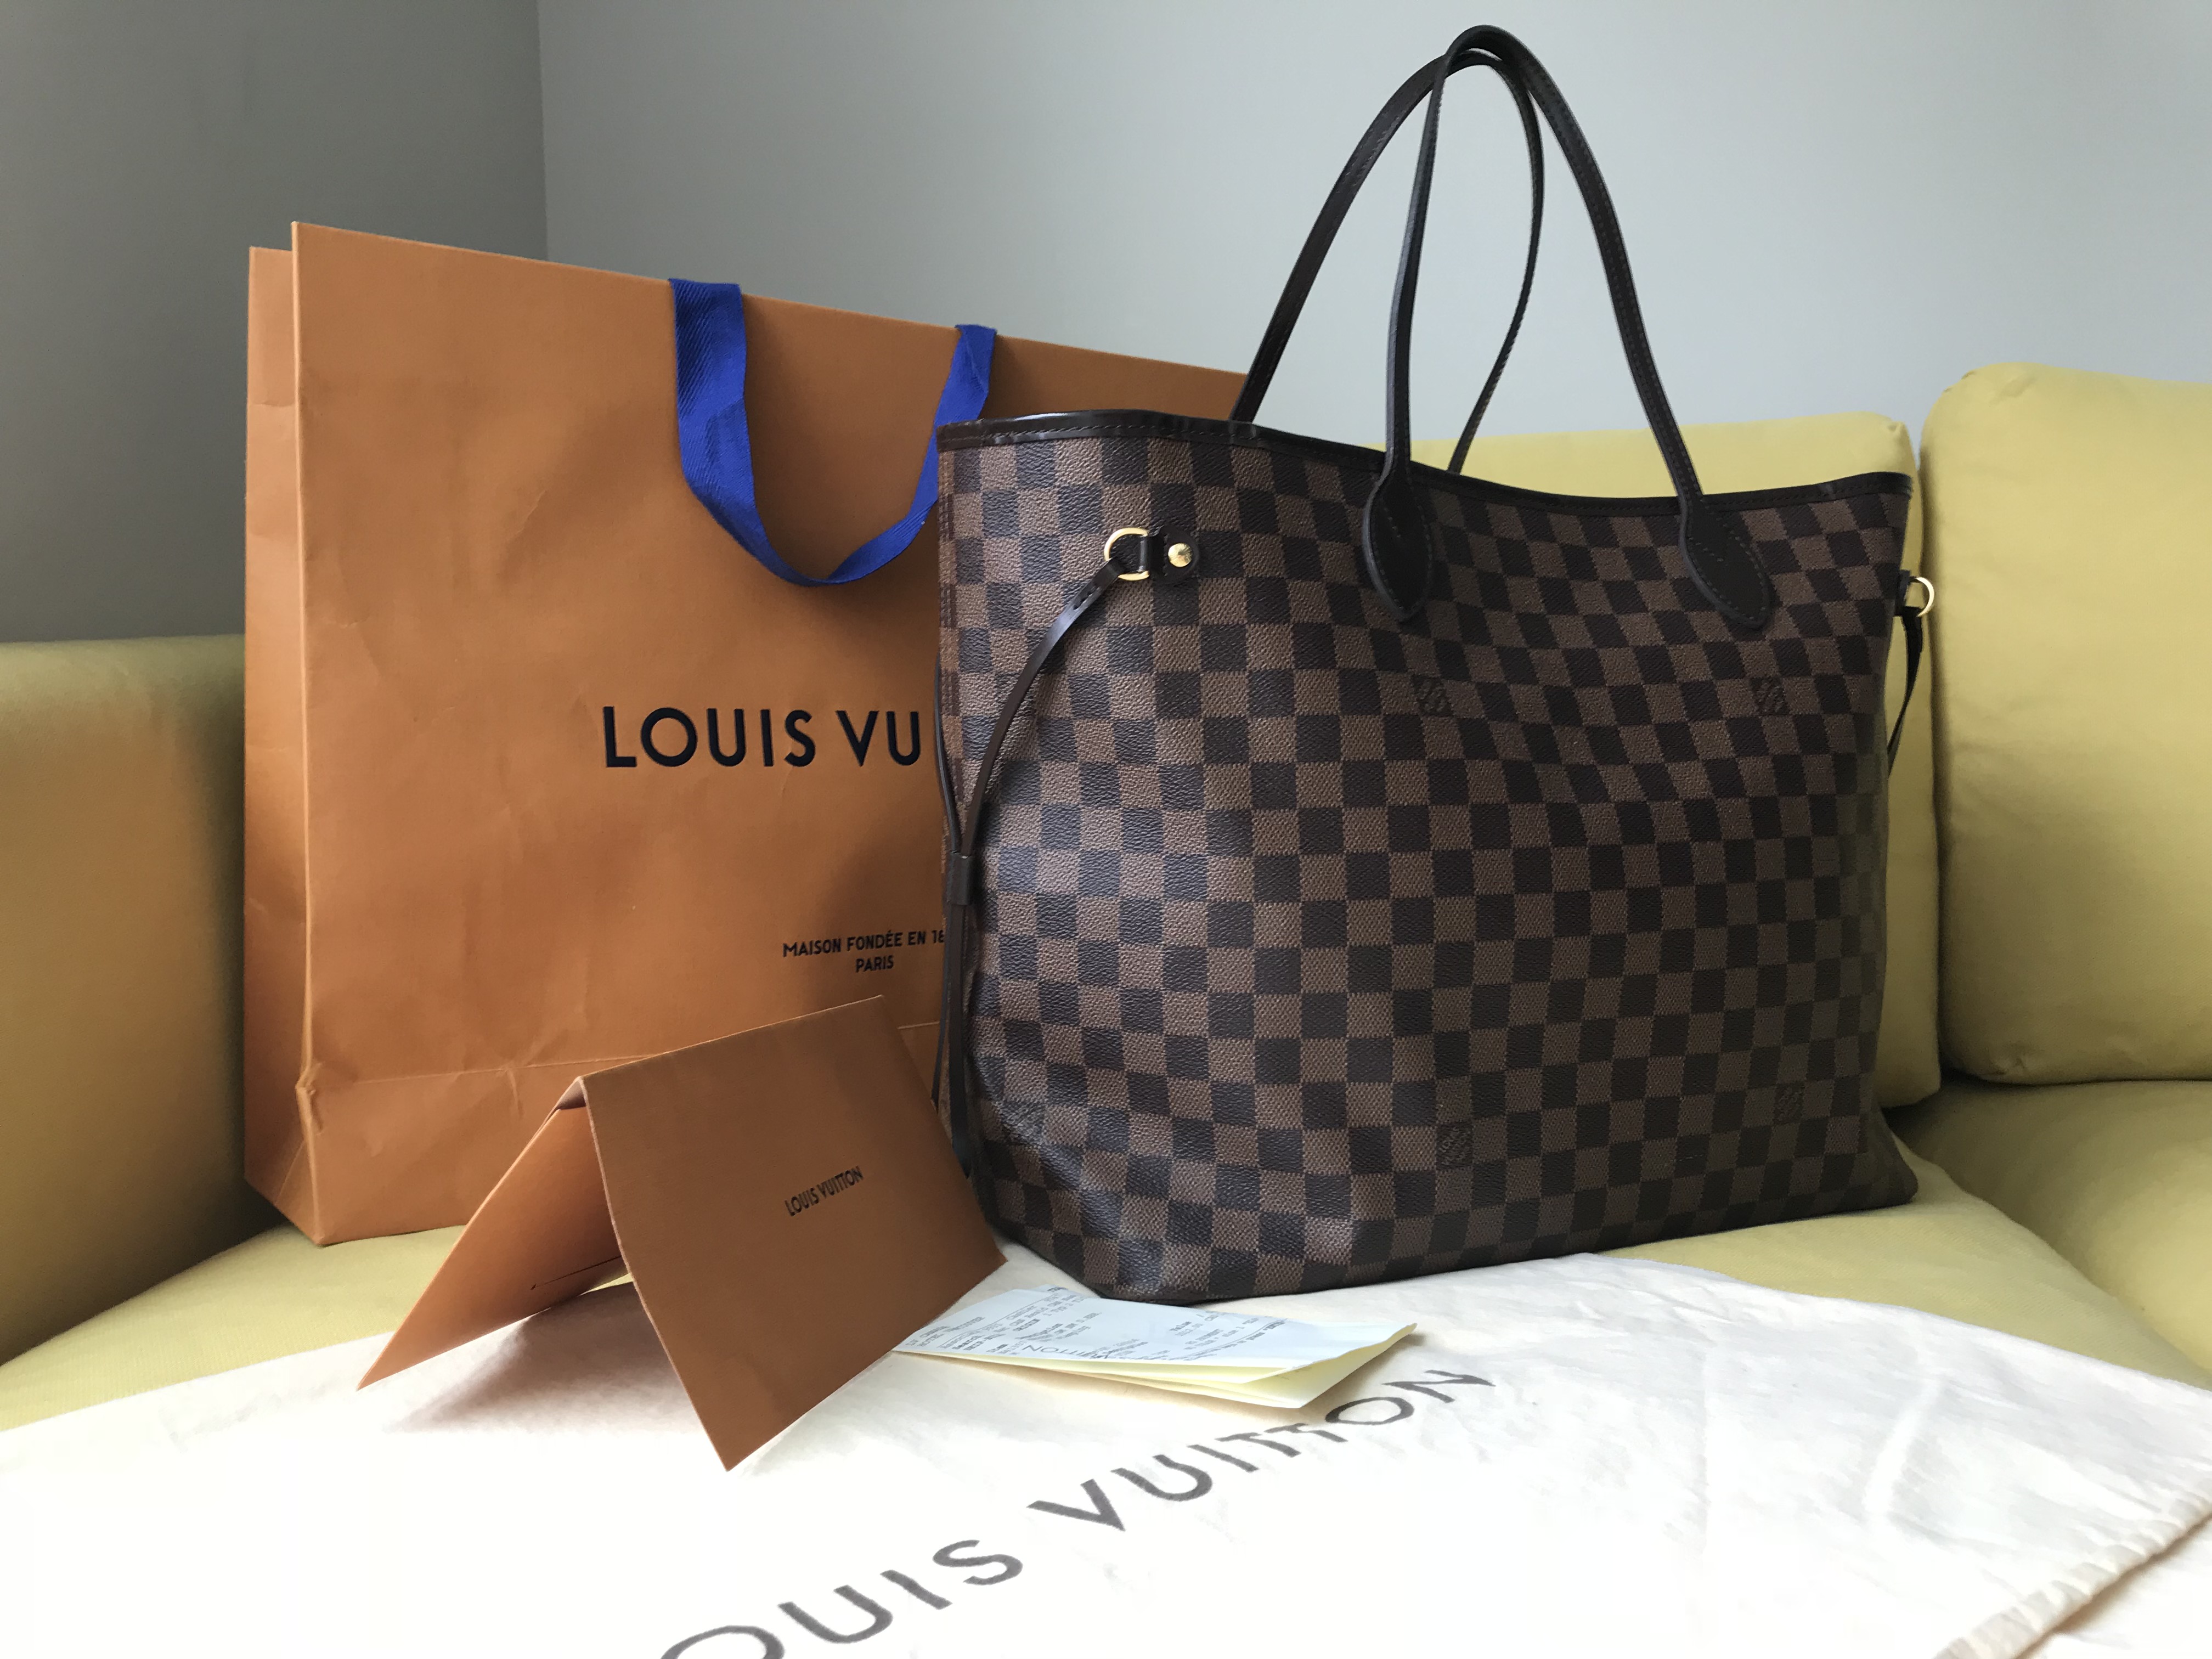 Louis Vuitton Neverfull MM Damier Ebene Tote Handbag